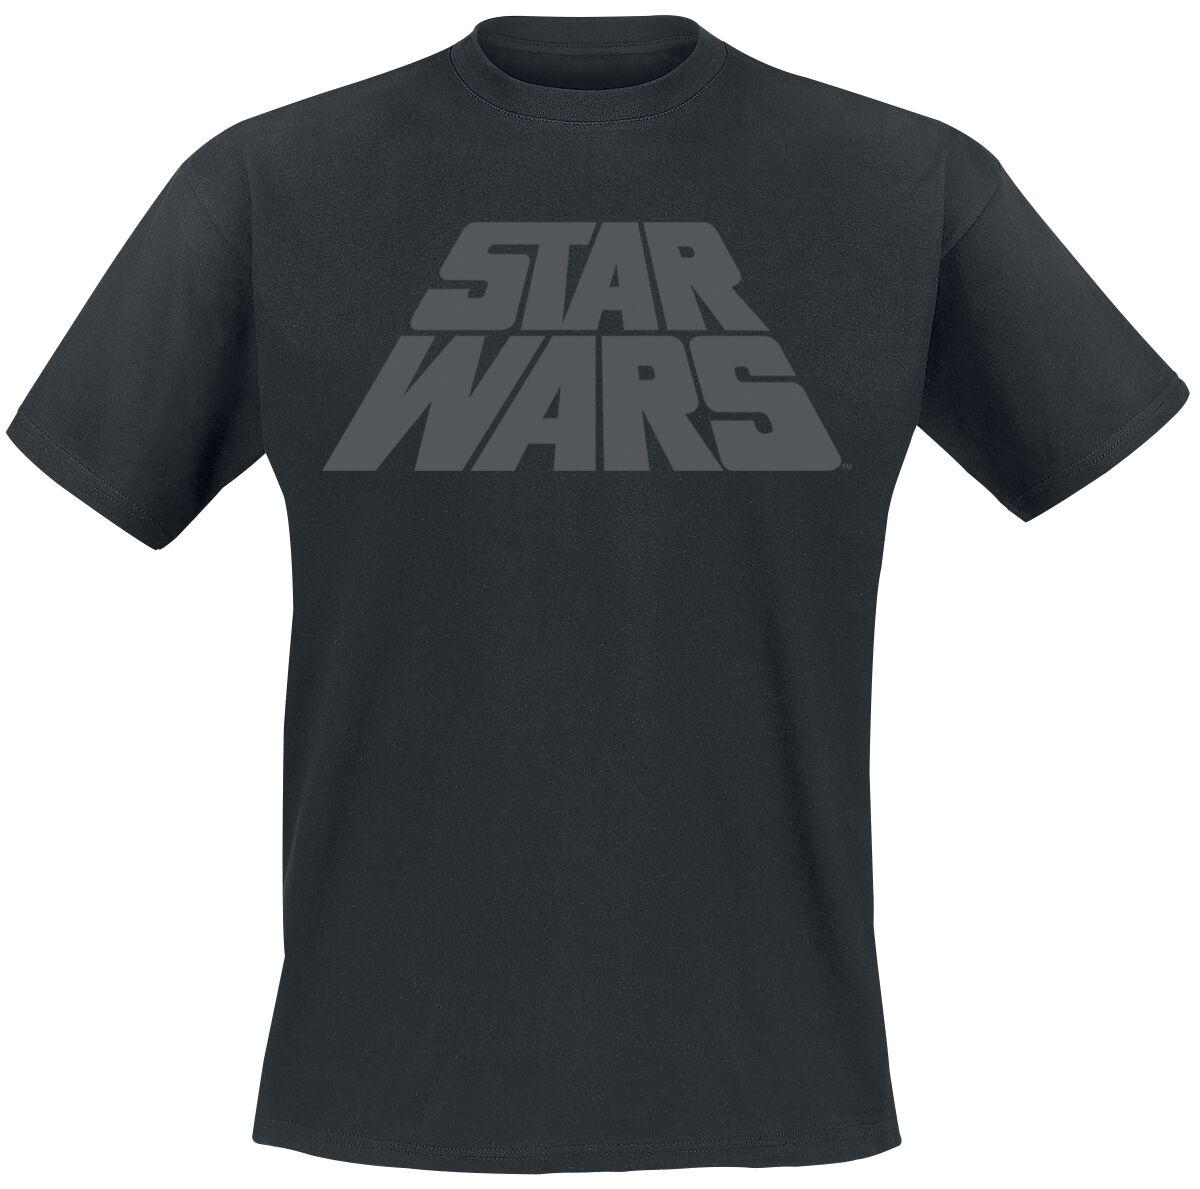 Star Wars T-Shirt - Logo - M bis 3XL - für Männer - Größe 3XL - schwarz  - EMP exklusives Merchandise!